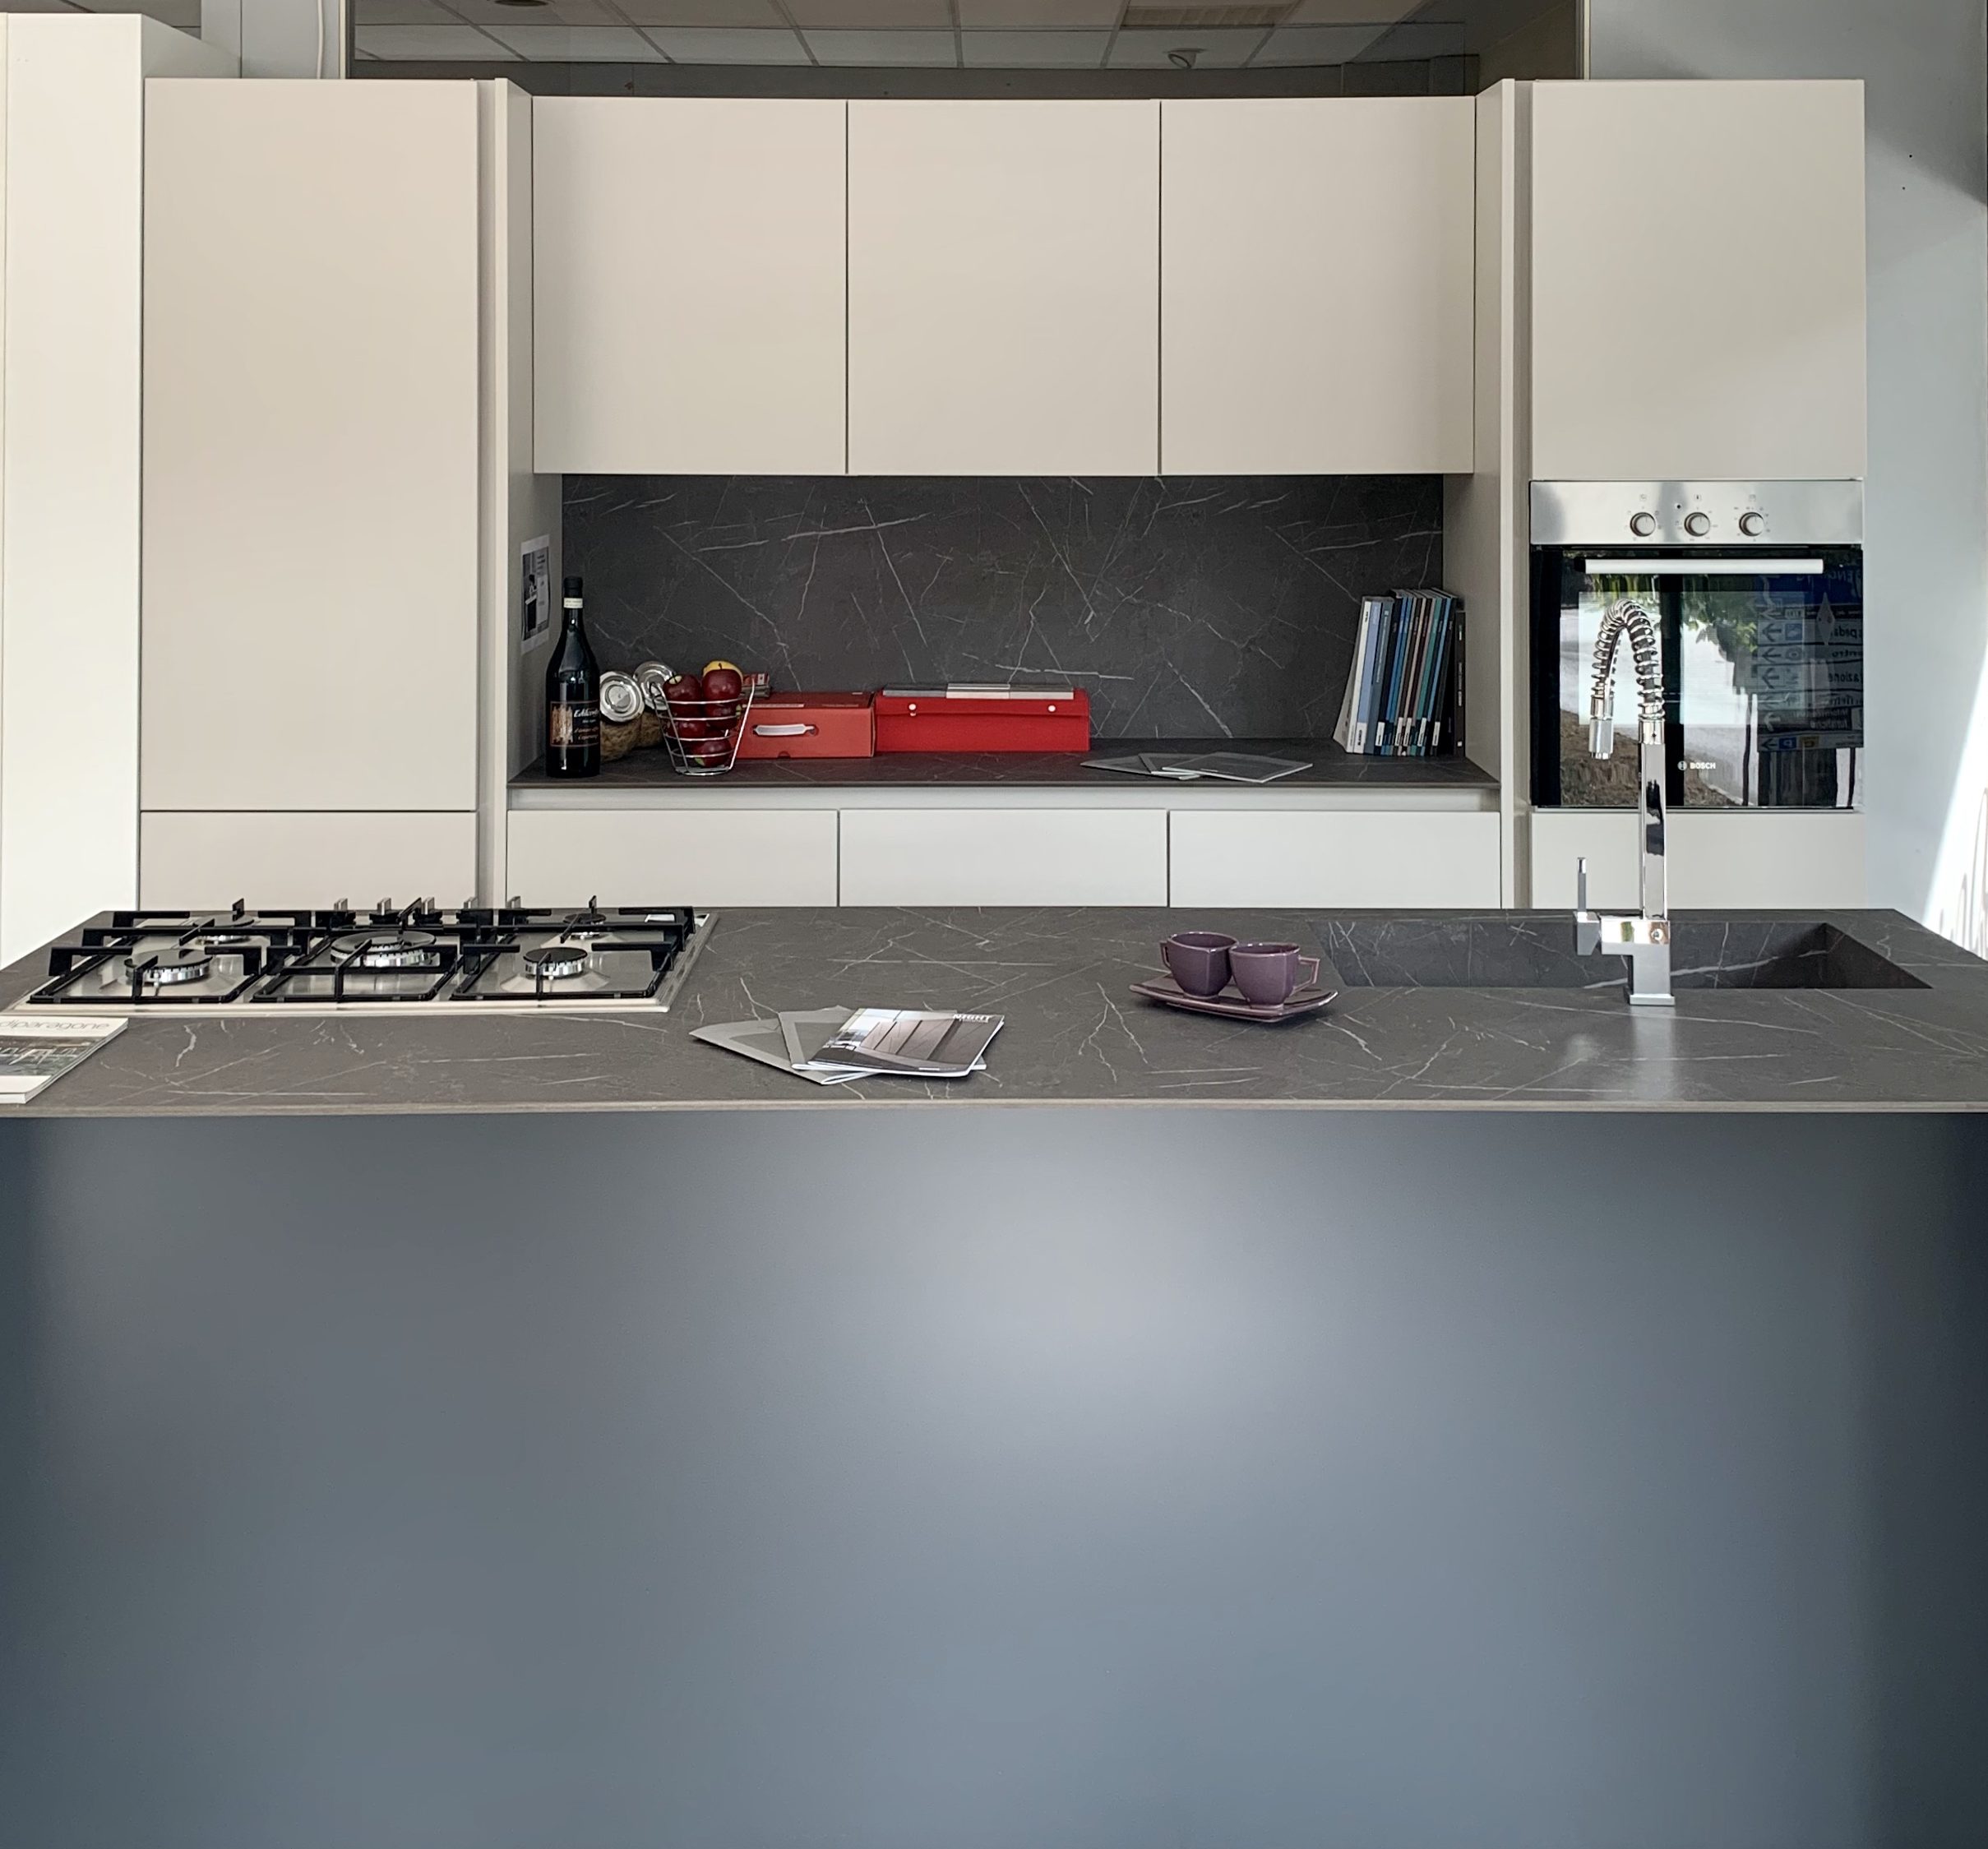 Immagine raffigurante una cucina spagnolcucine. Da destra a sinistra si visualizza un lavandino un piano cottura e delle tazzine. Sullo sfondo un mobile con un forno, libri, bottiglie e una fruttiera